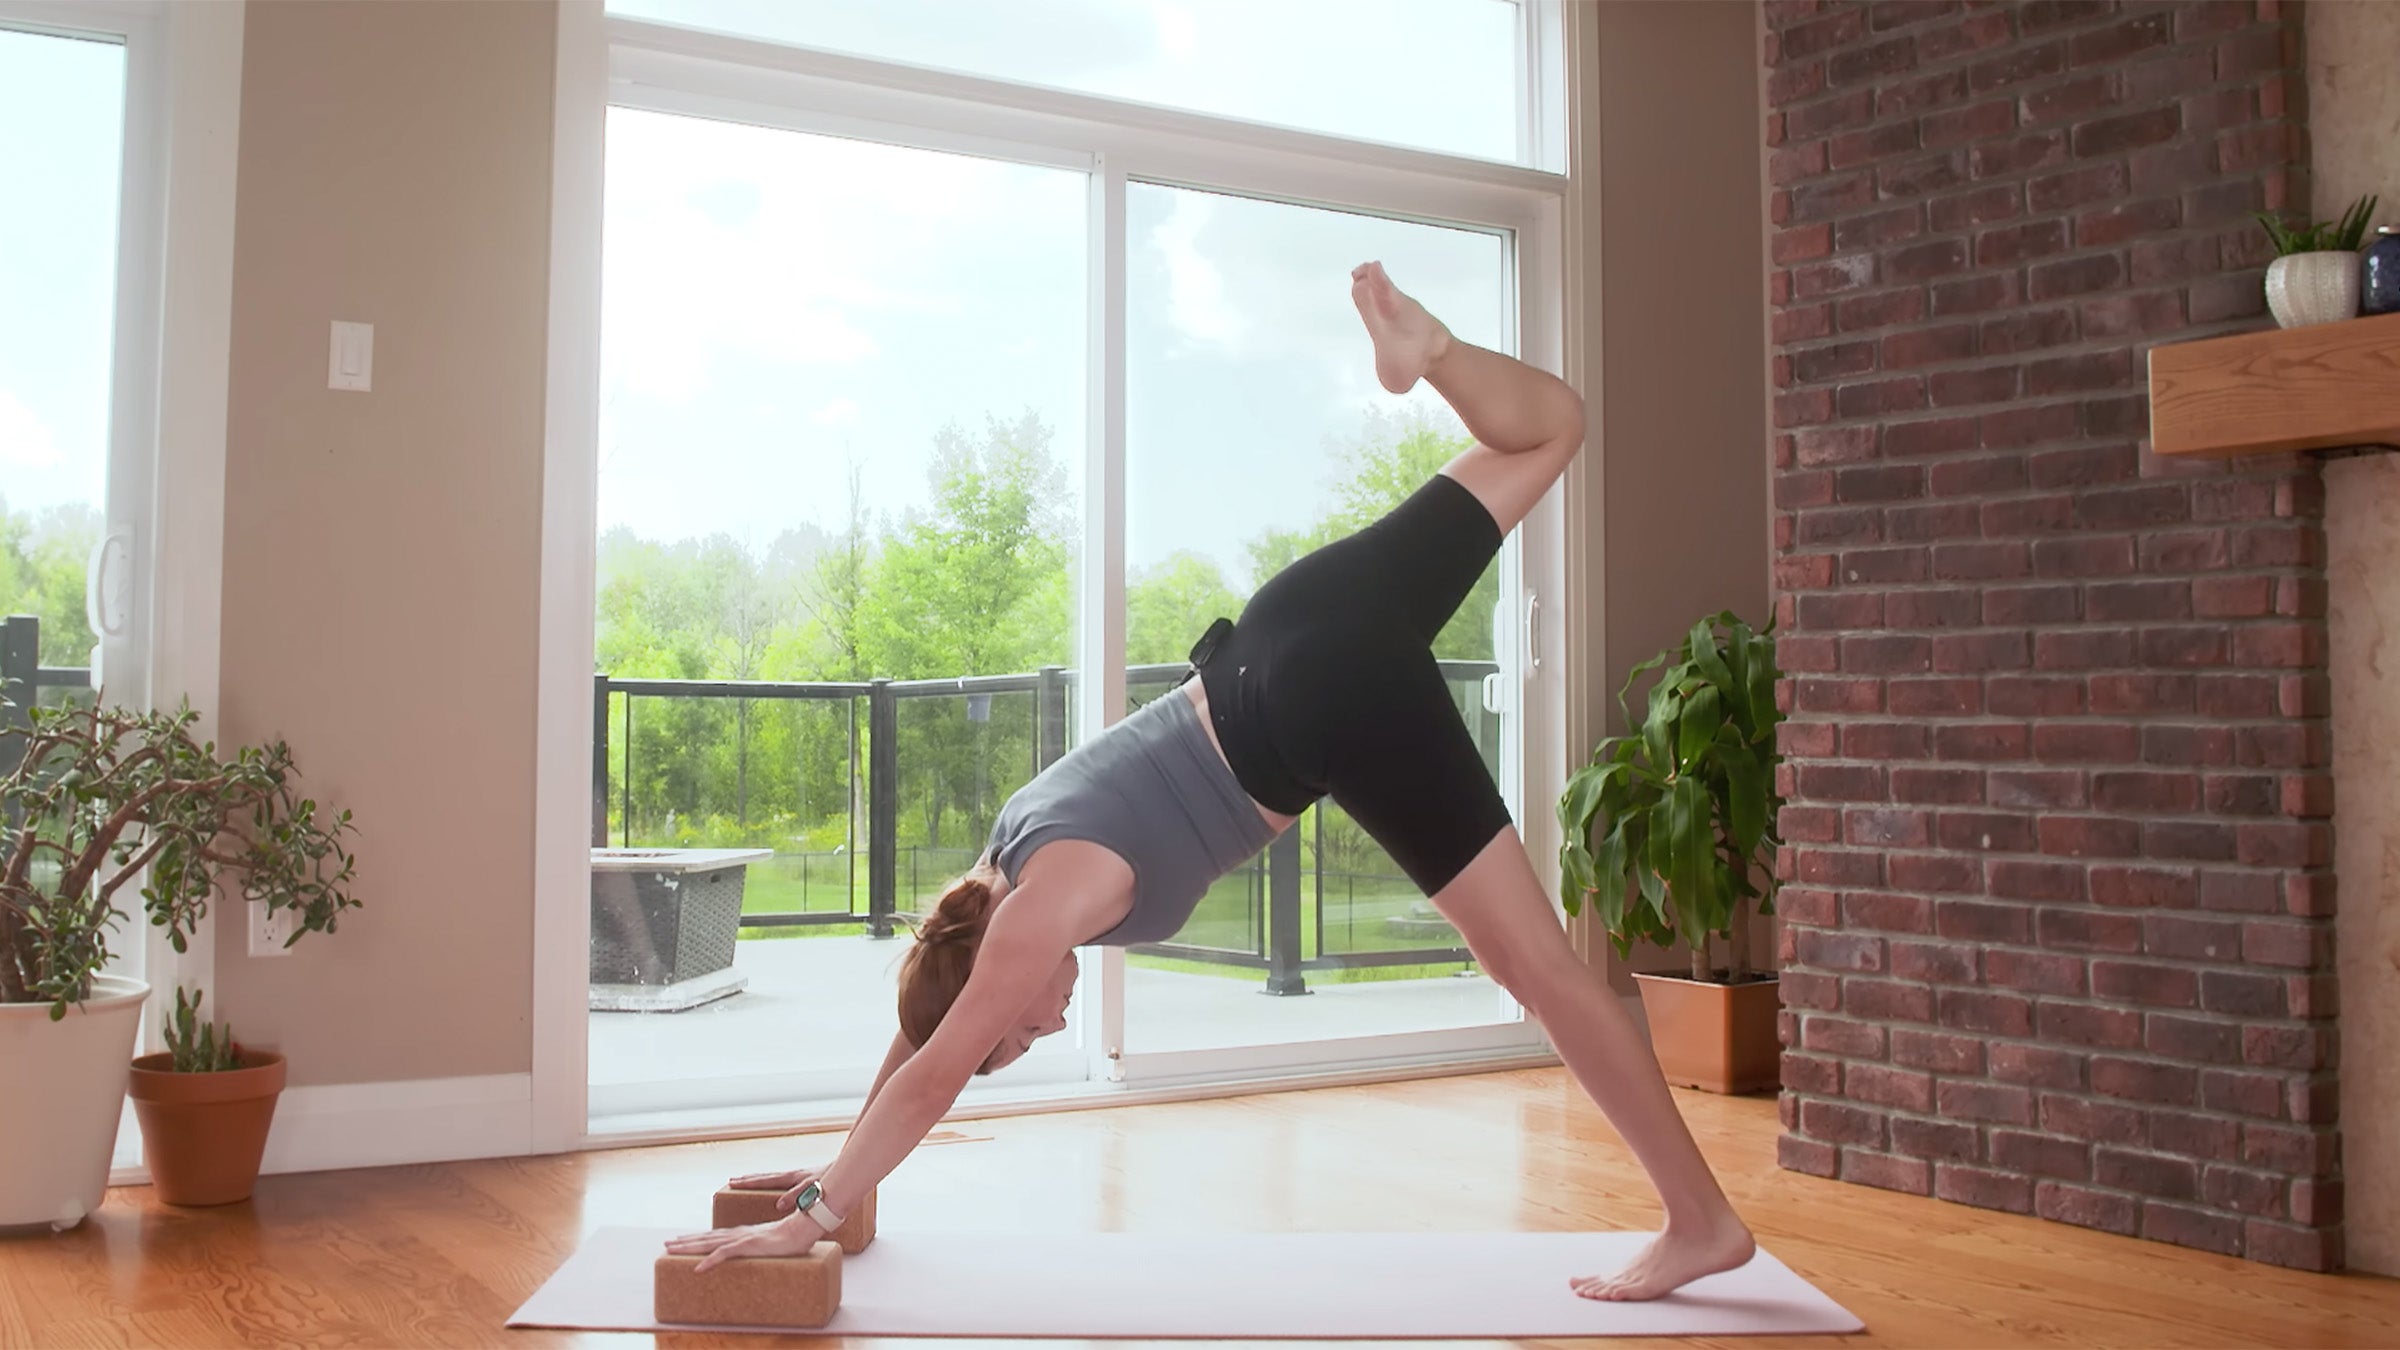 Grab Your Yoga Blocks: Vinyasa Yoga Practice with Blocks for